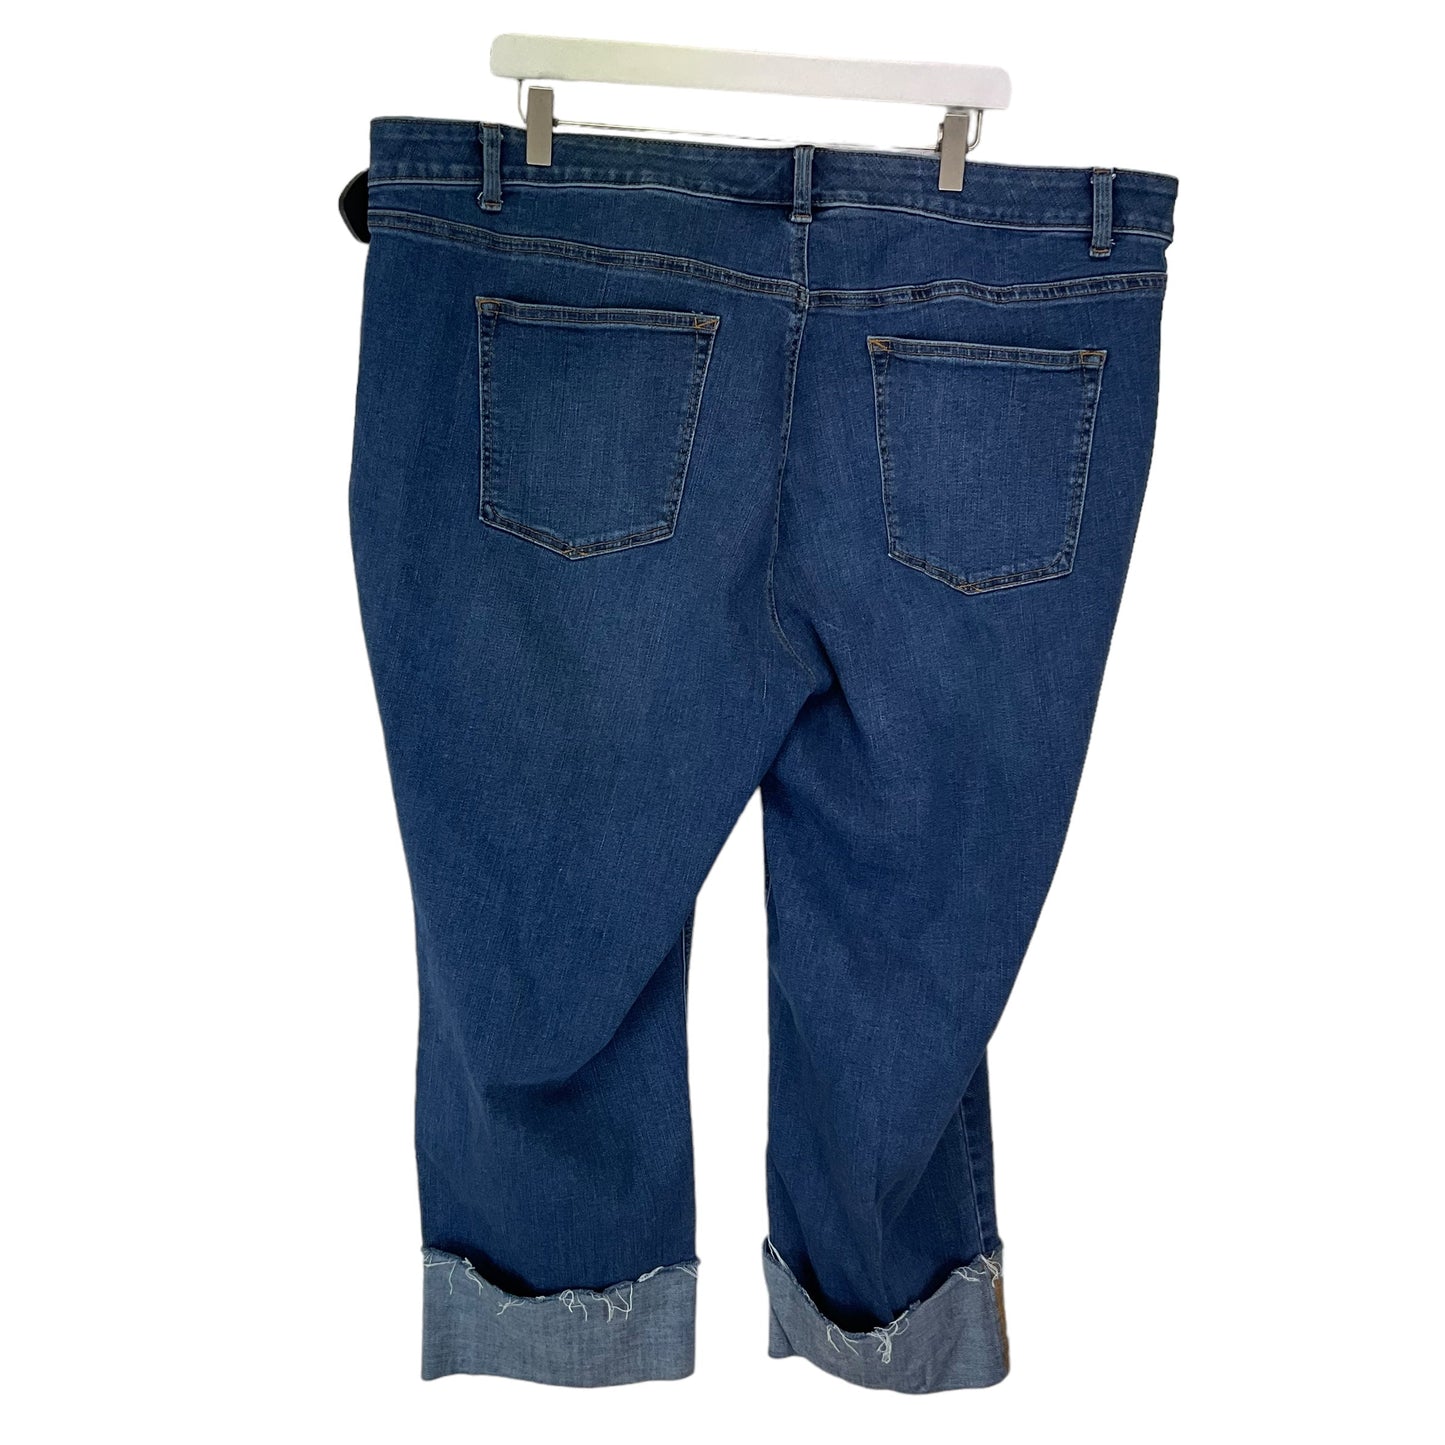 Blue Denim Jeans Boot Cut Talbots, Size 22